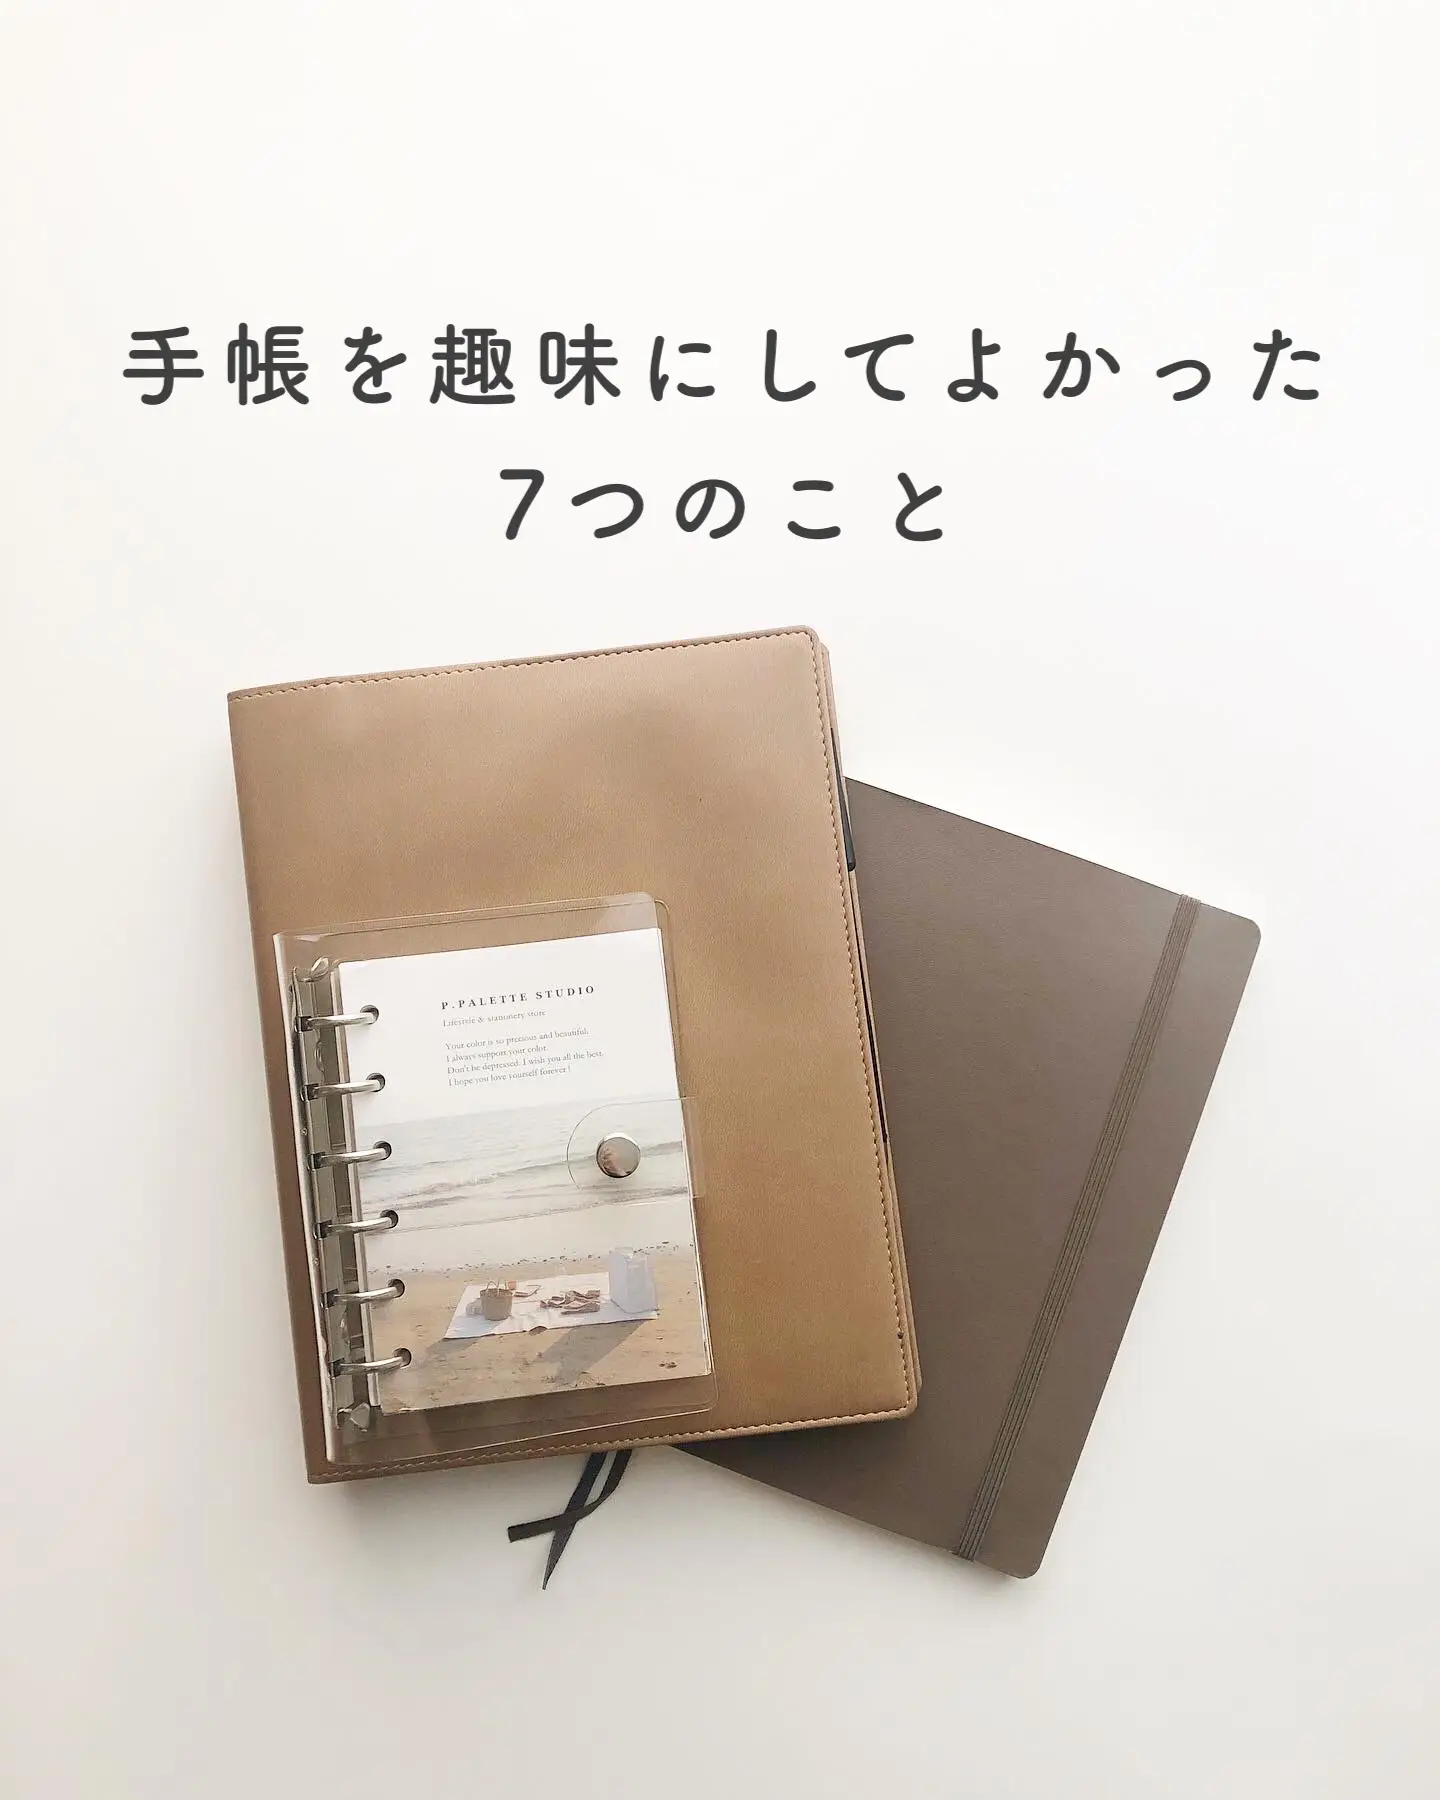 外への持ち出しなしP.PALETTE mini chocolate Diary システム手帳 - 手帳